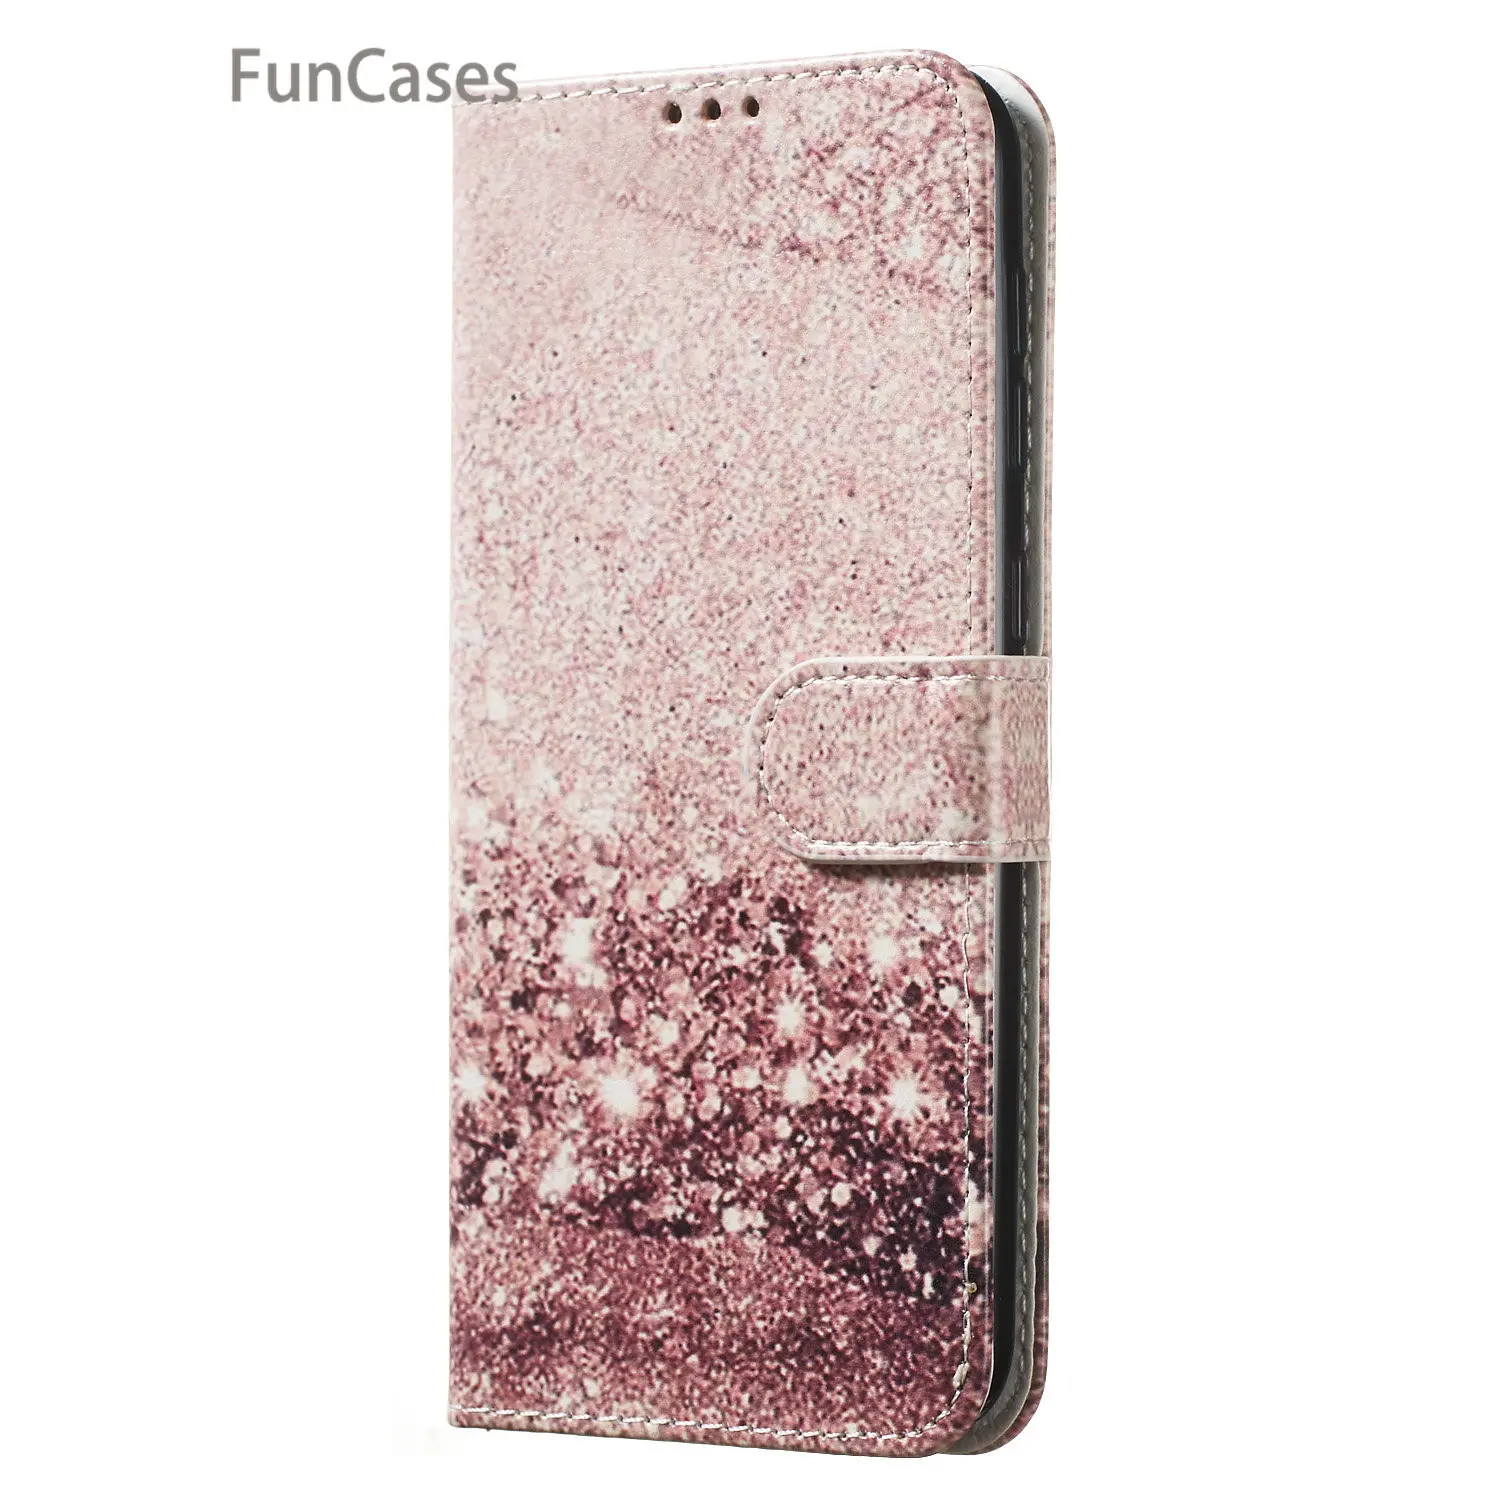 Розовый чехол-кошелек из искусственной кожи для аксессуаров Samsung M30 чехлы